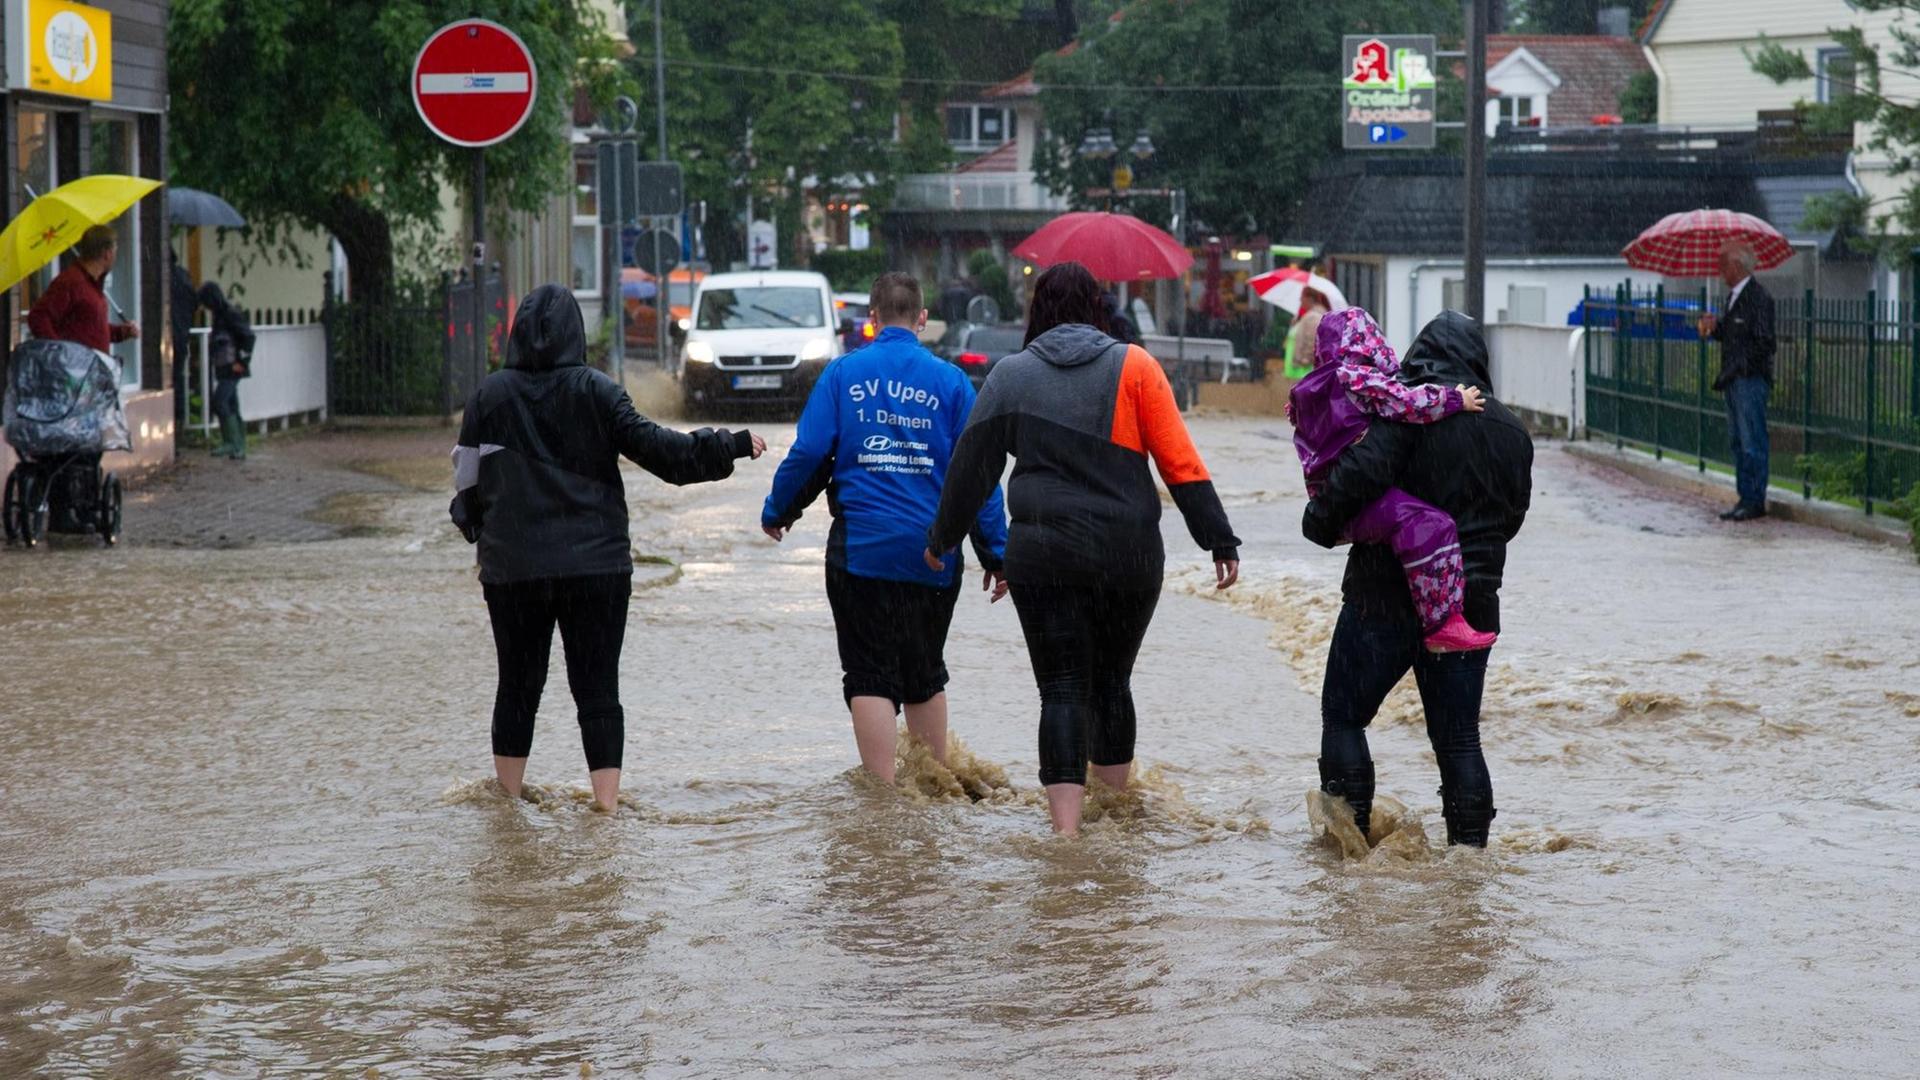 Passanten gehen am 26.07.2017 in Bad Harzburg (Niedersachsen) durch Wasser einer überfluteten Straße. Dauerregen hat im südlichen Niedersachsen in einigen Orten zu Überschwemmungen geführt.